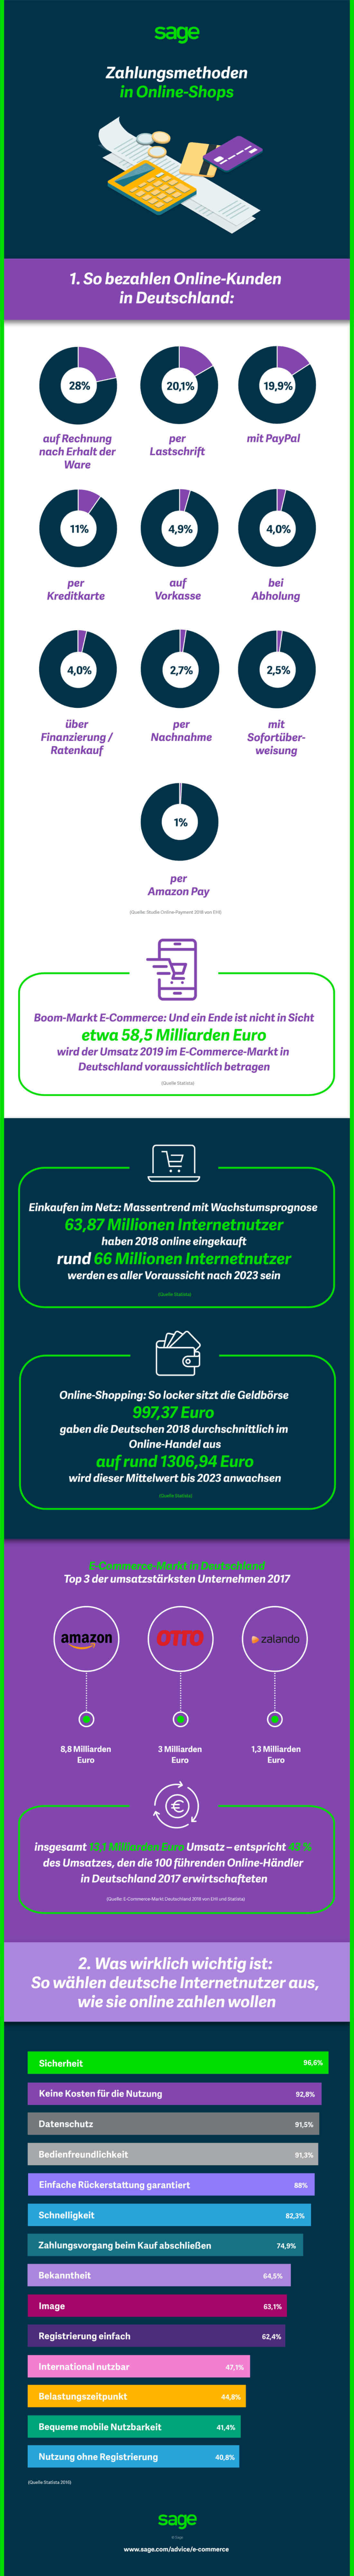 Infografik_E-Commerce_Online-Zahlmethoden